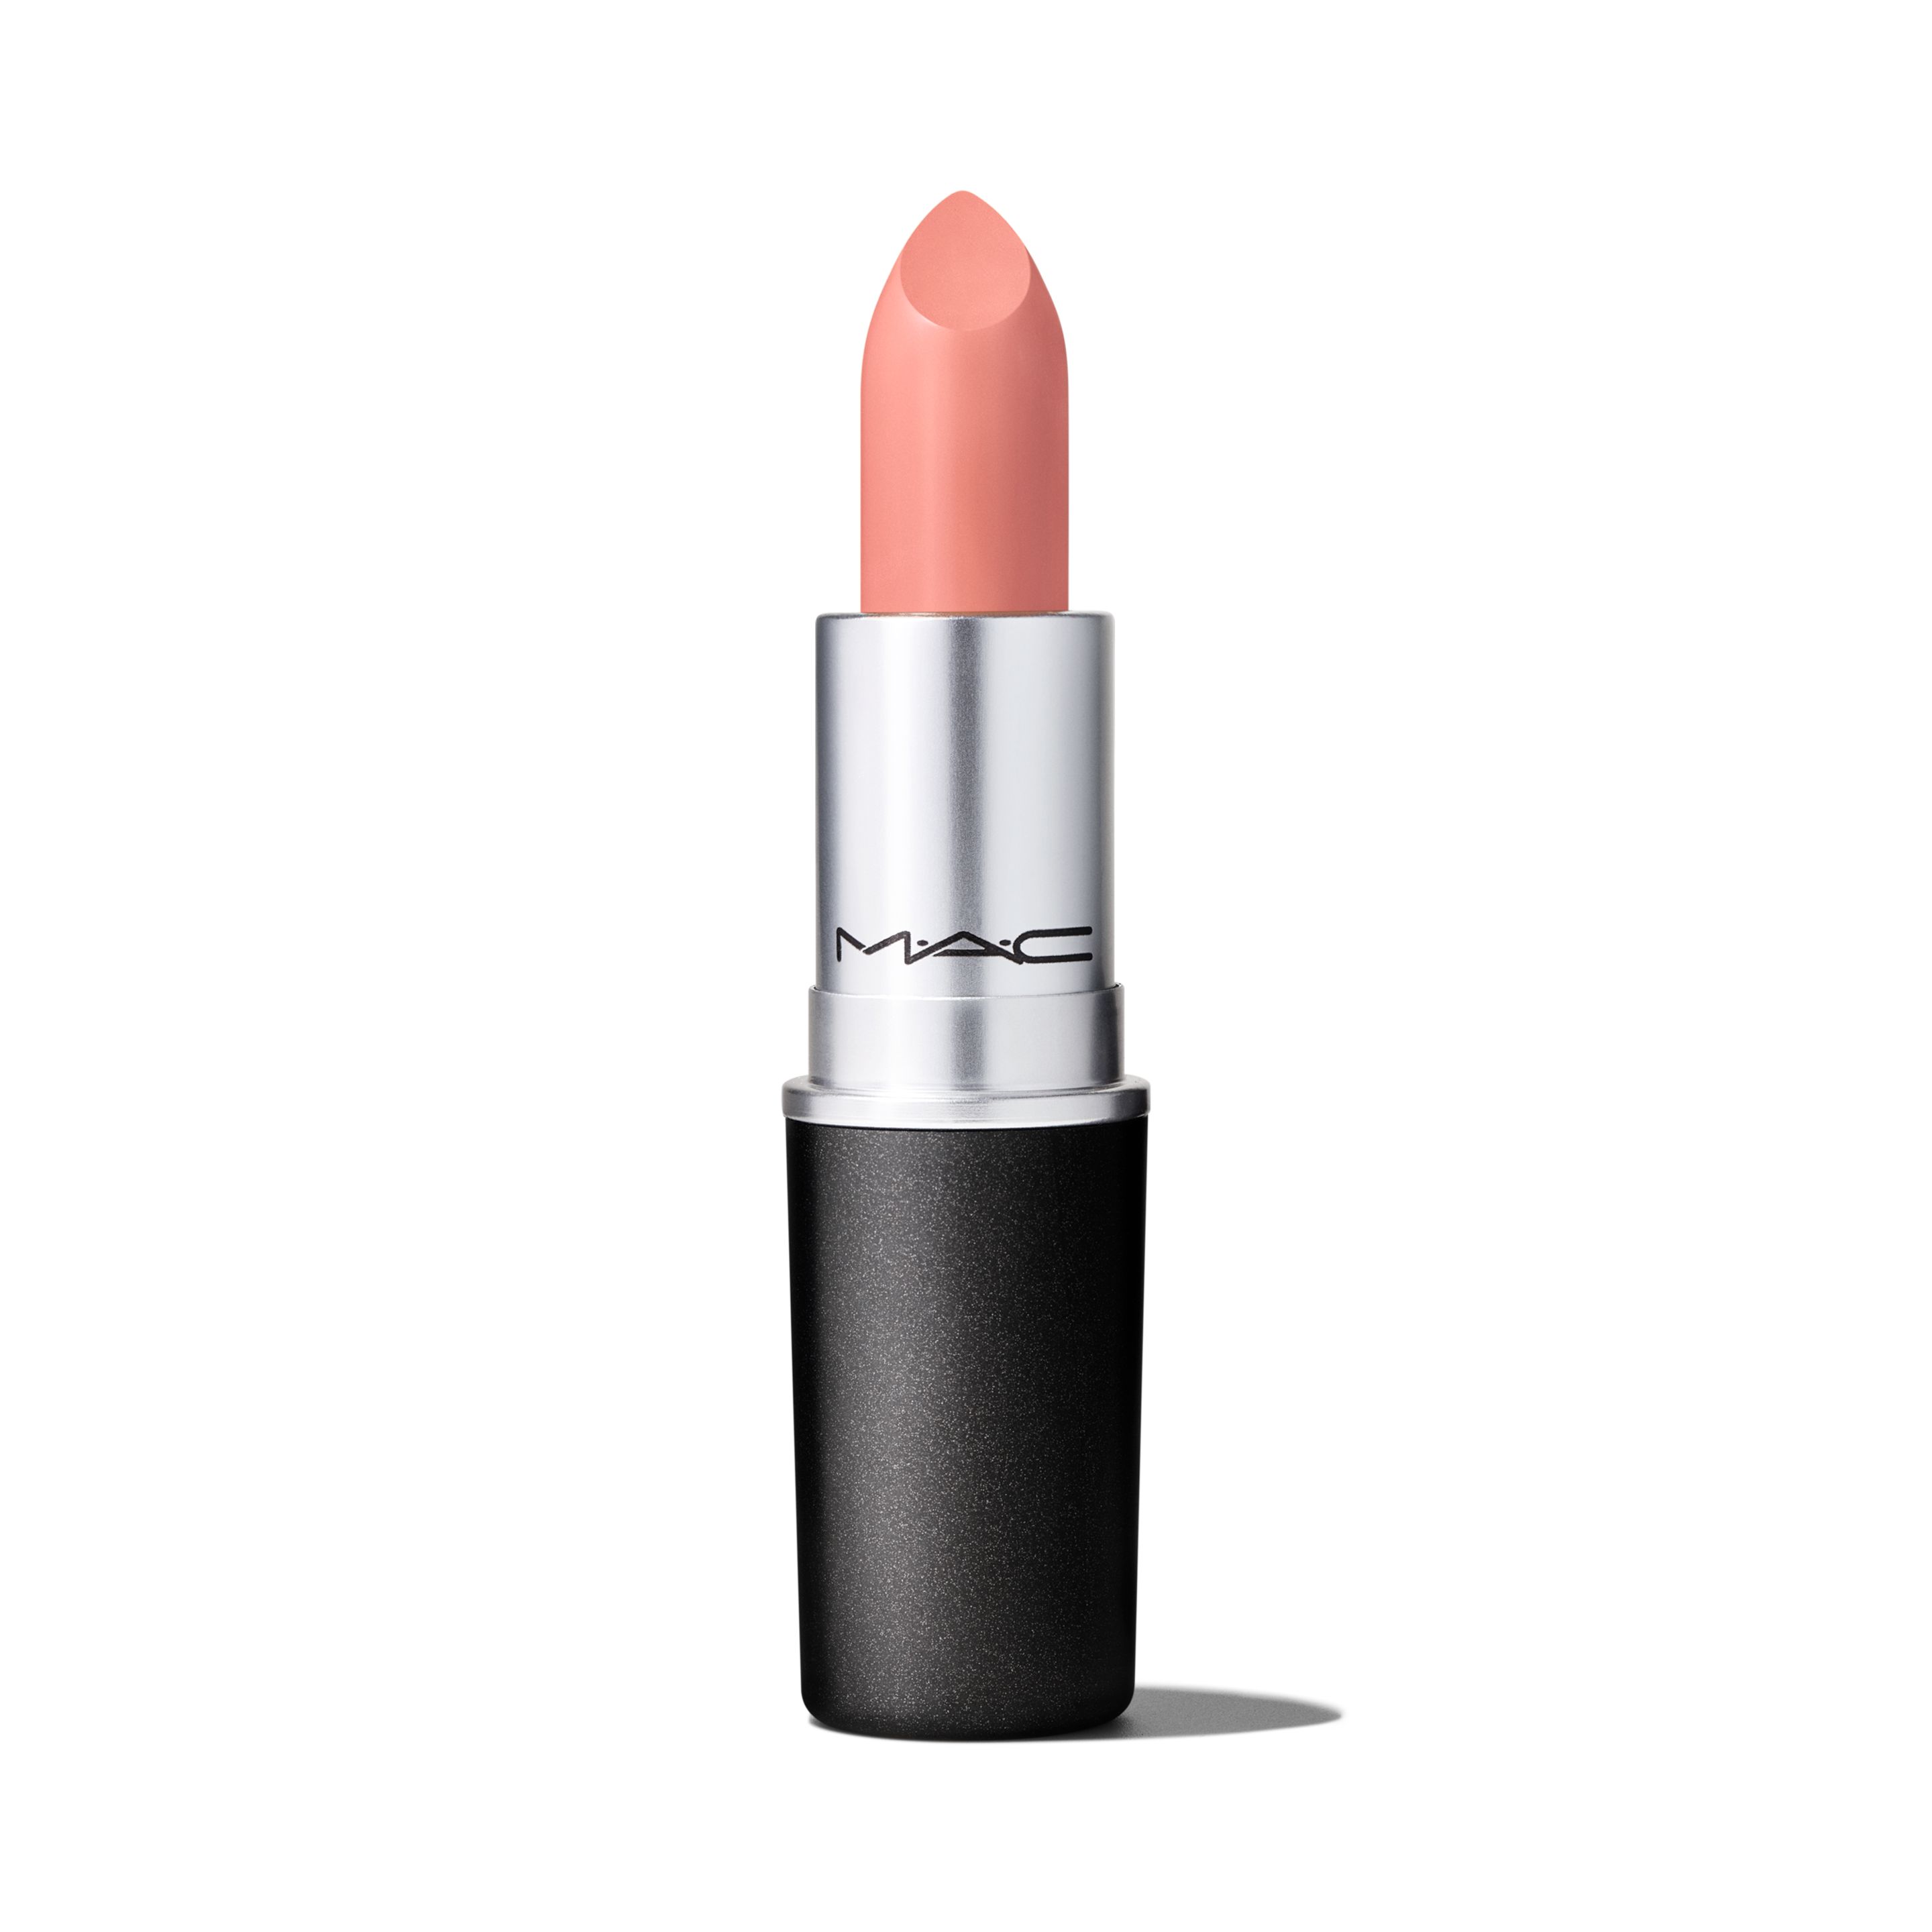 Помада для губ MAC Cosmetics Satin Lipstick кремовая, тон Myth, 3 г помада для губ mac love me lipstick с атласным эффектом тон french silk 3 г